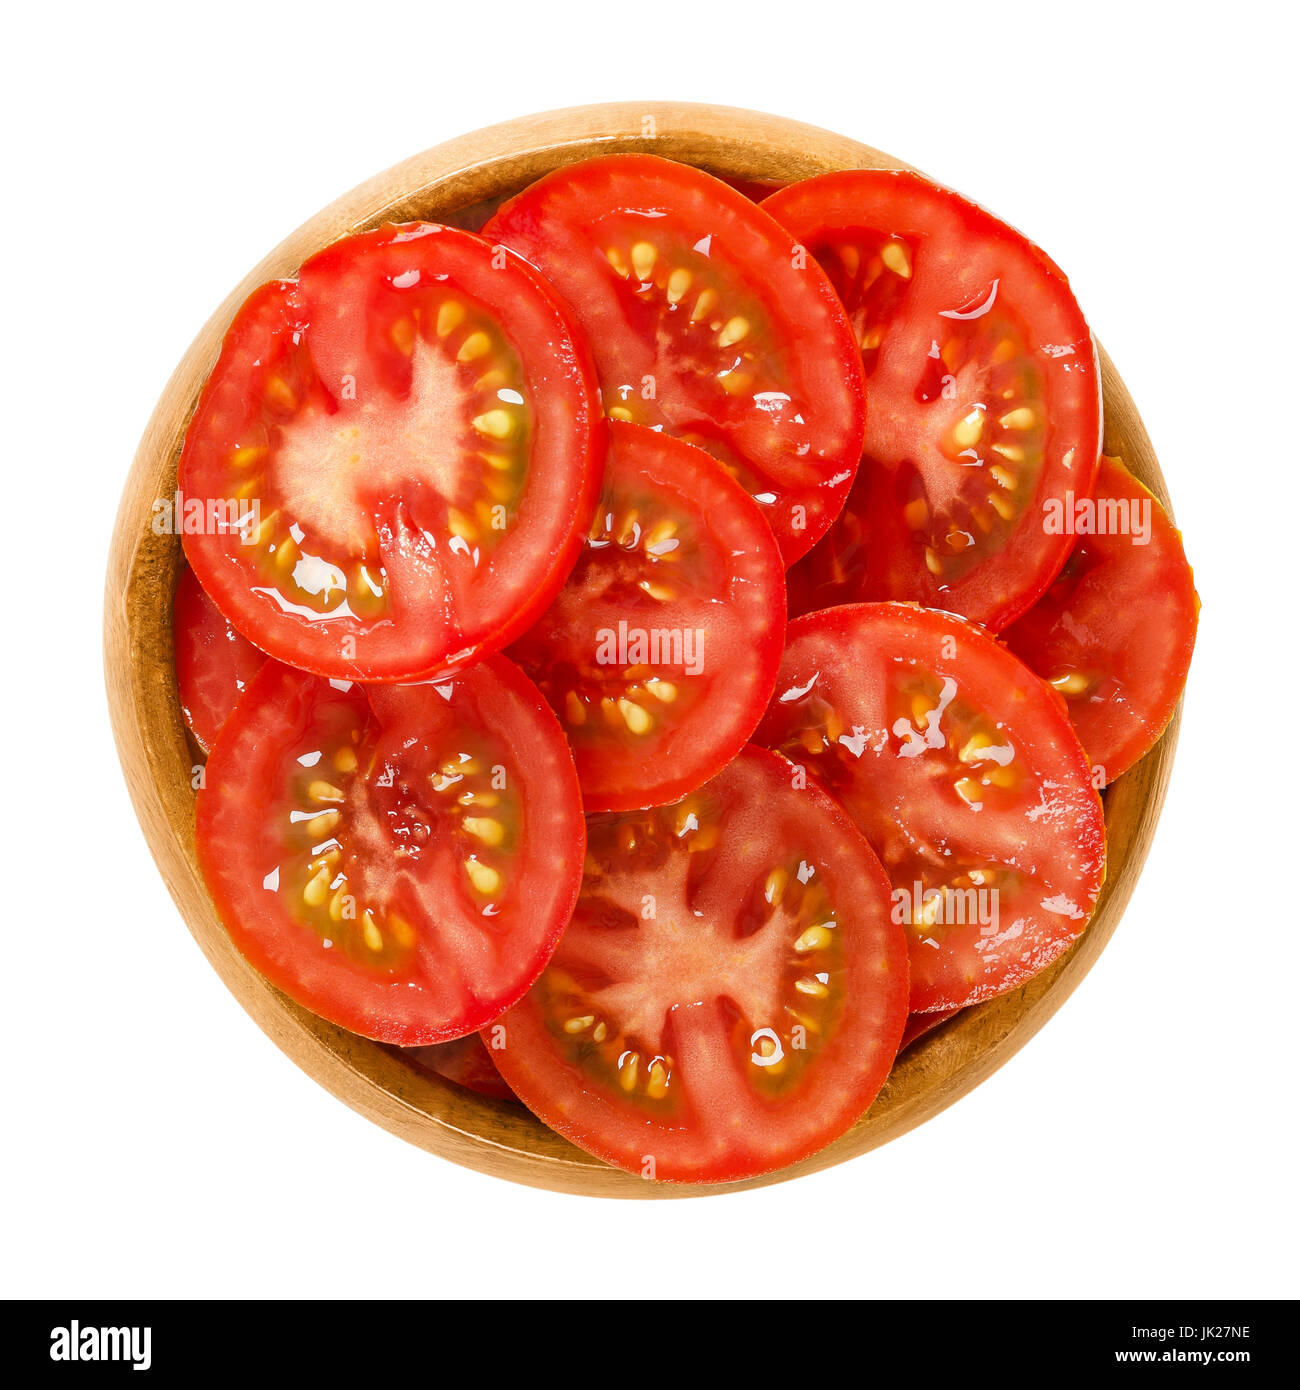 Les tranches de tomate dans un bol en bois. Mûres comestibles et des fruits de Solanum lycopersicum par la couleur rouge, coupé en fines lamelles. Macro photo alimentaire isolé. Banque D'Images